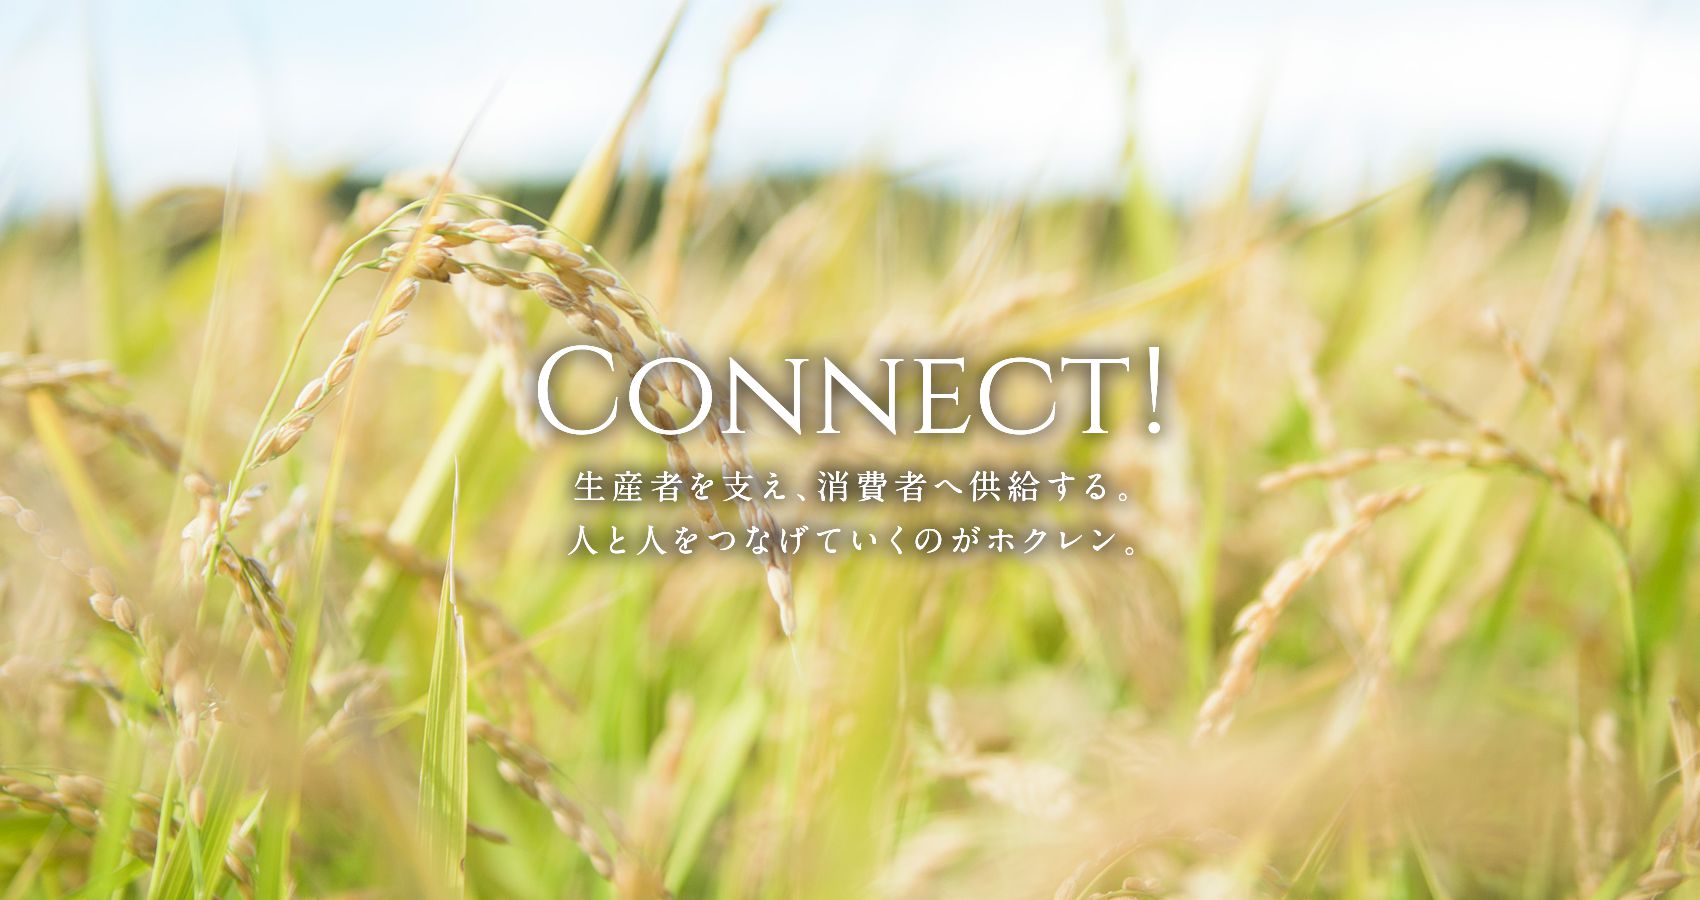 CONNECT! 生産者を支え、消費者へ供給する。人と人をつなげていくのがホクレン。